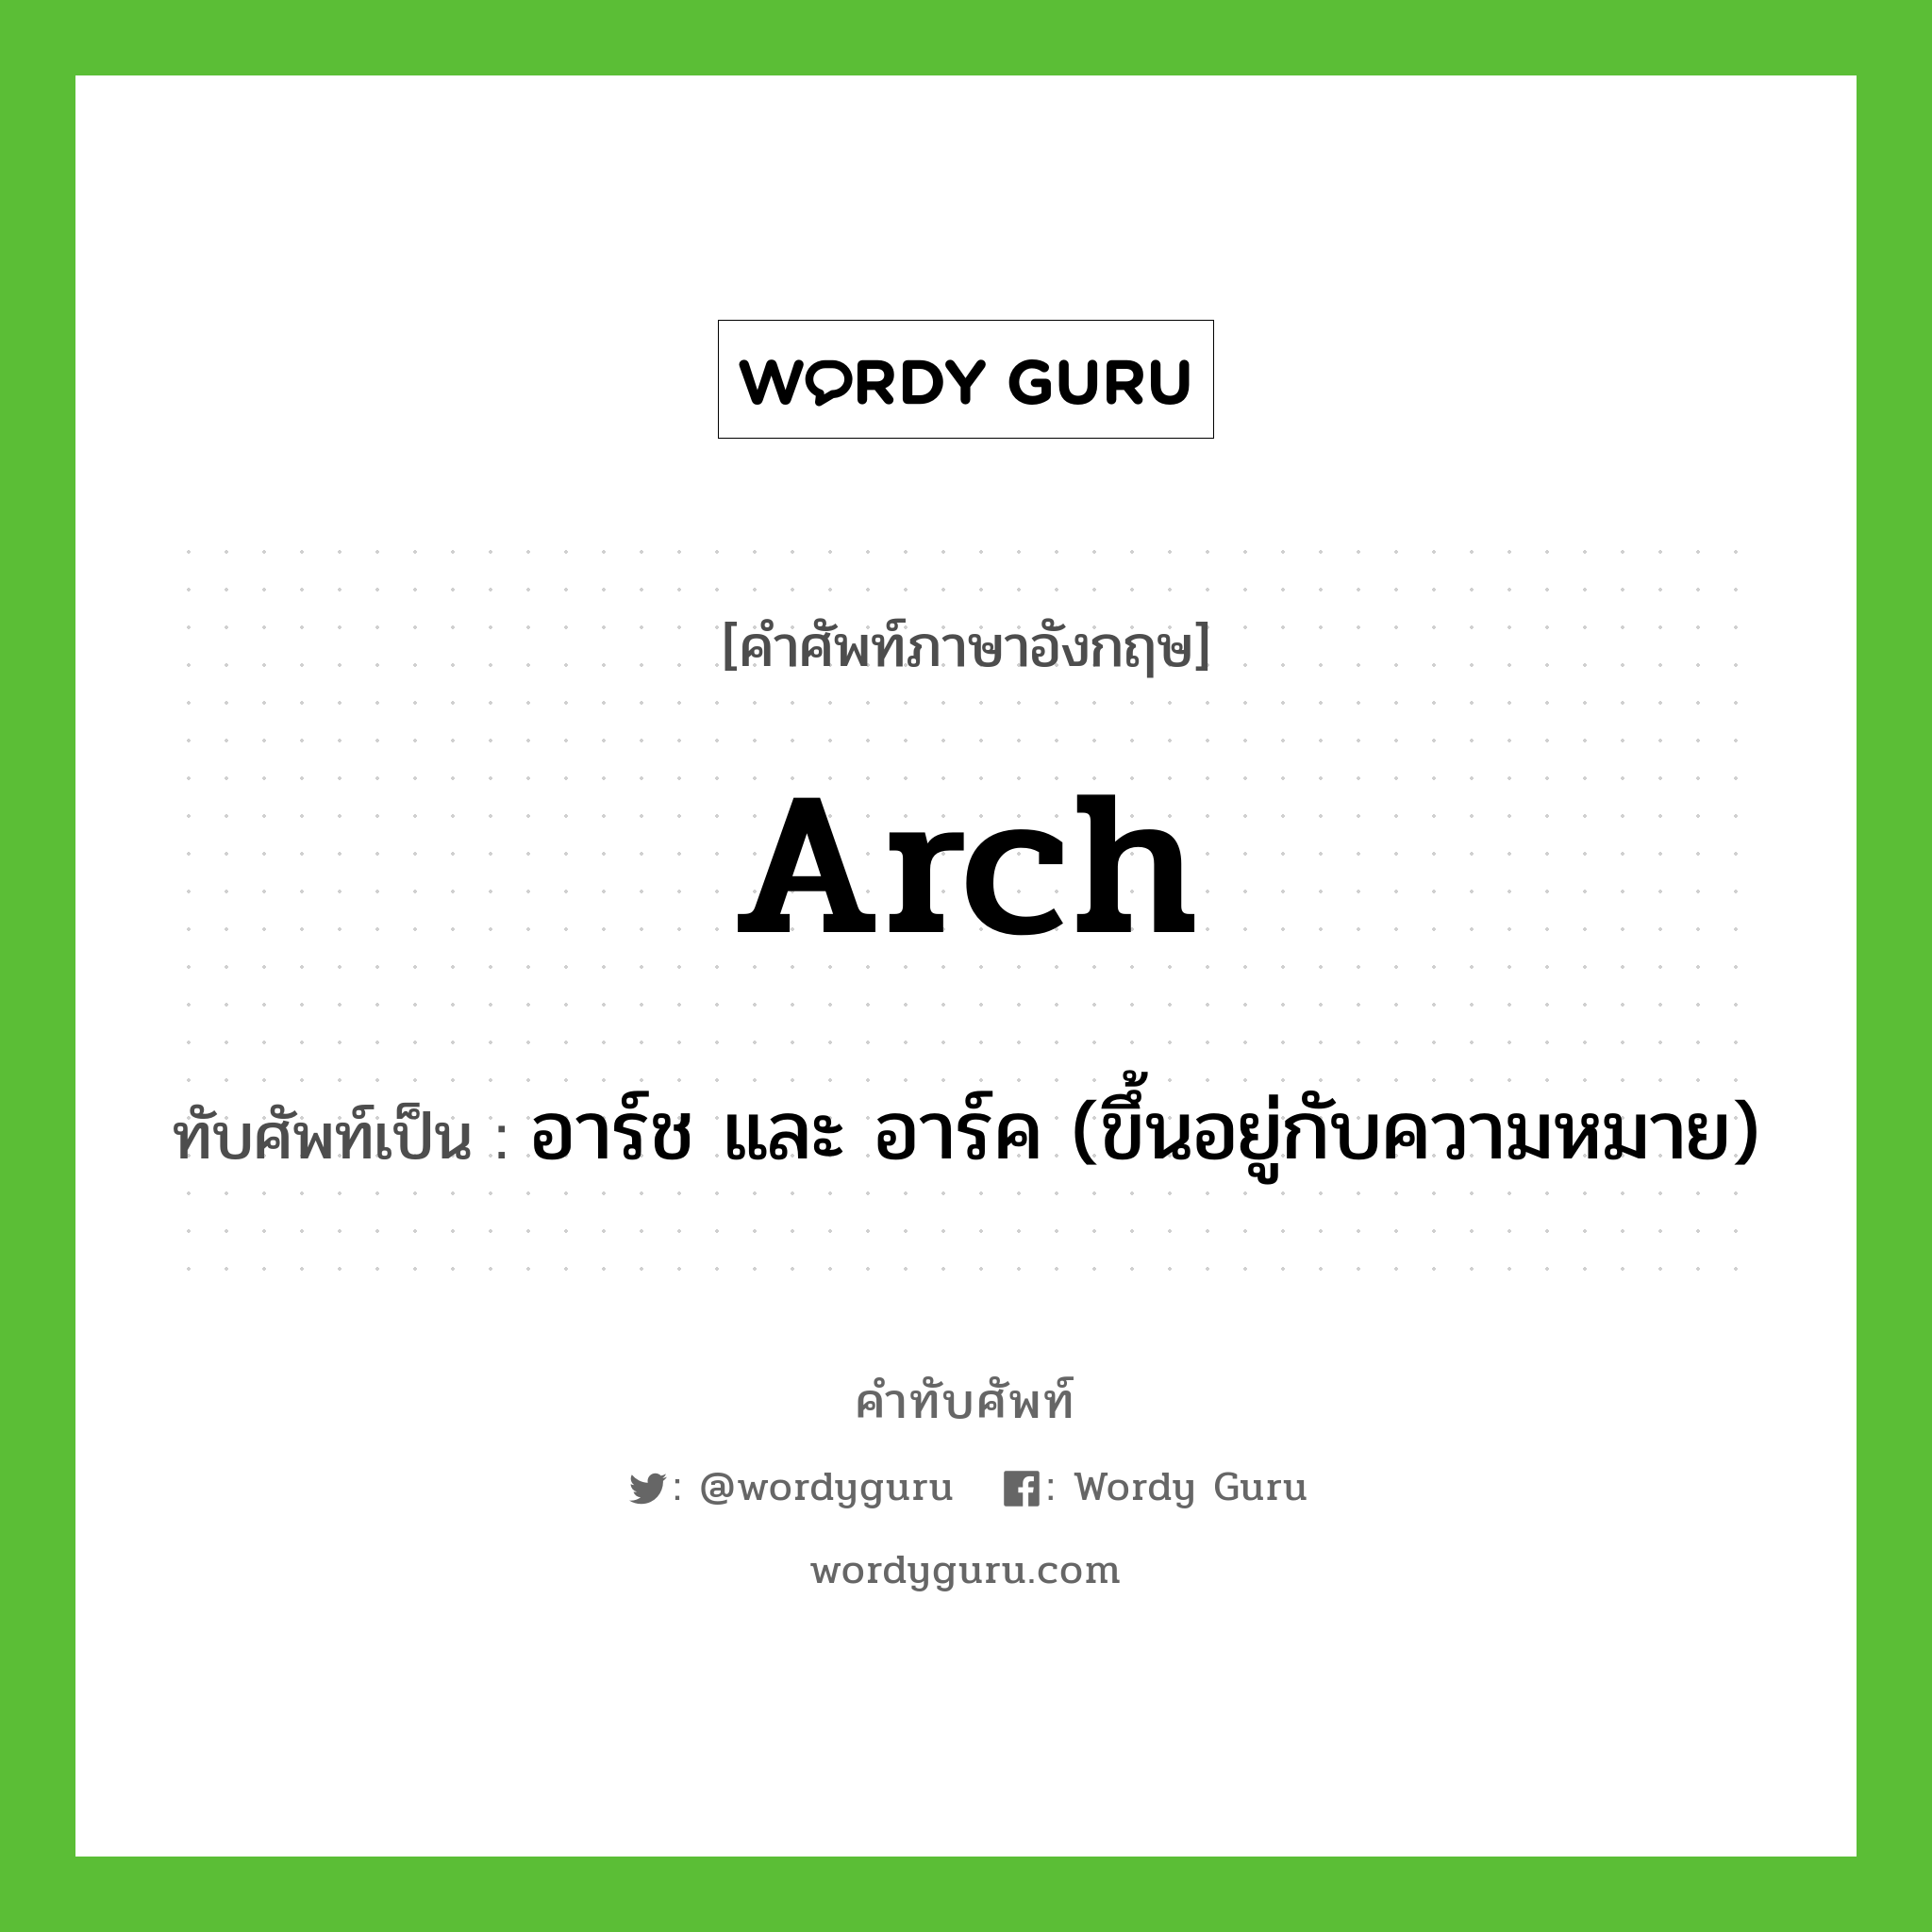 arch เขียนเป็นคำไทยว่าอะไร?, คำศัพท์ภาษาอังกฤษ arch ทับศัพท์เป็น อาร์ช และ อาร์ค (ขึ้นอยู่กับความหมาย)